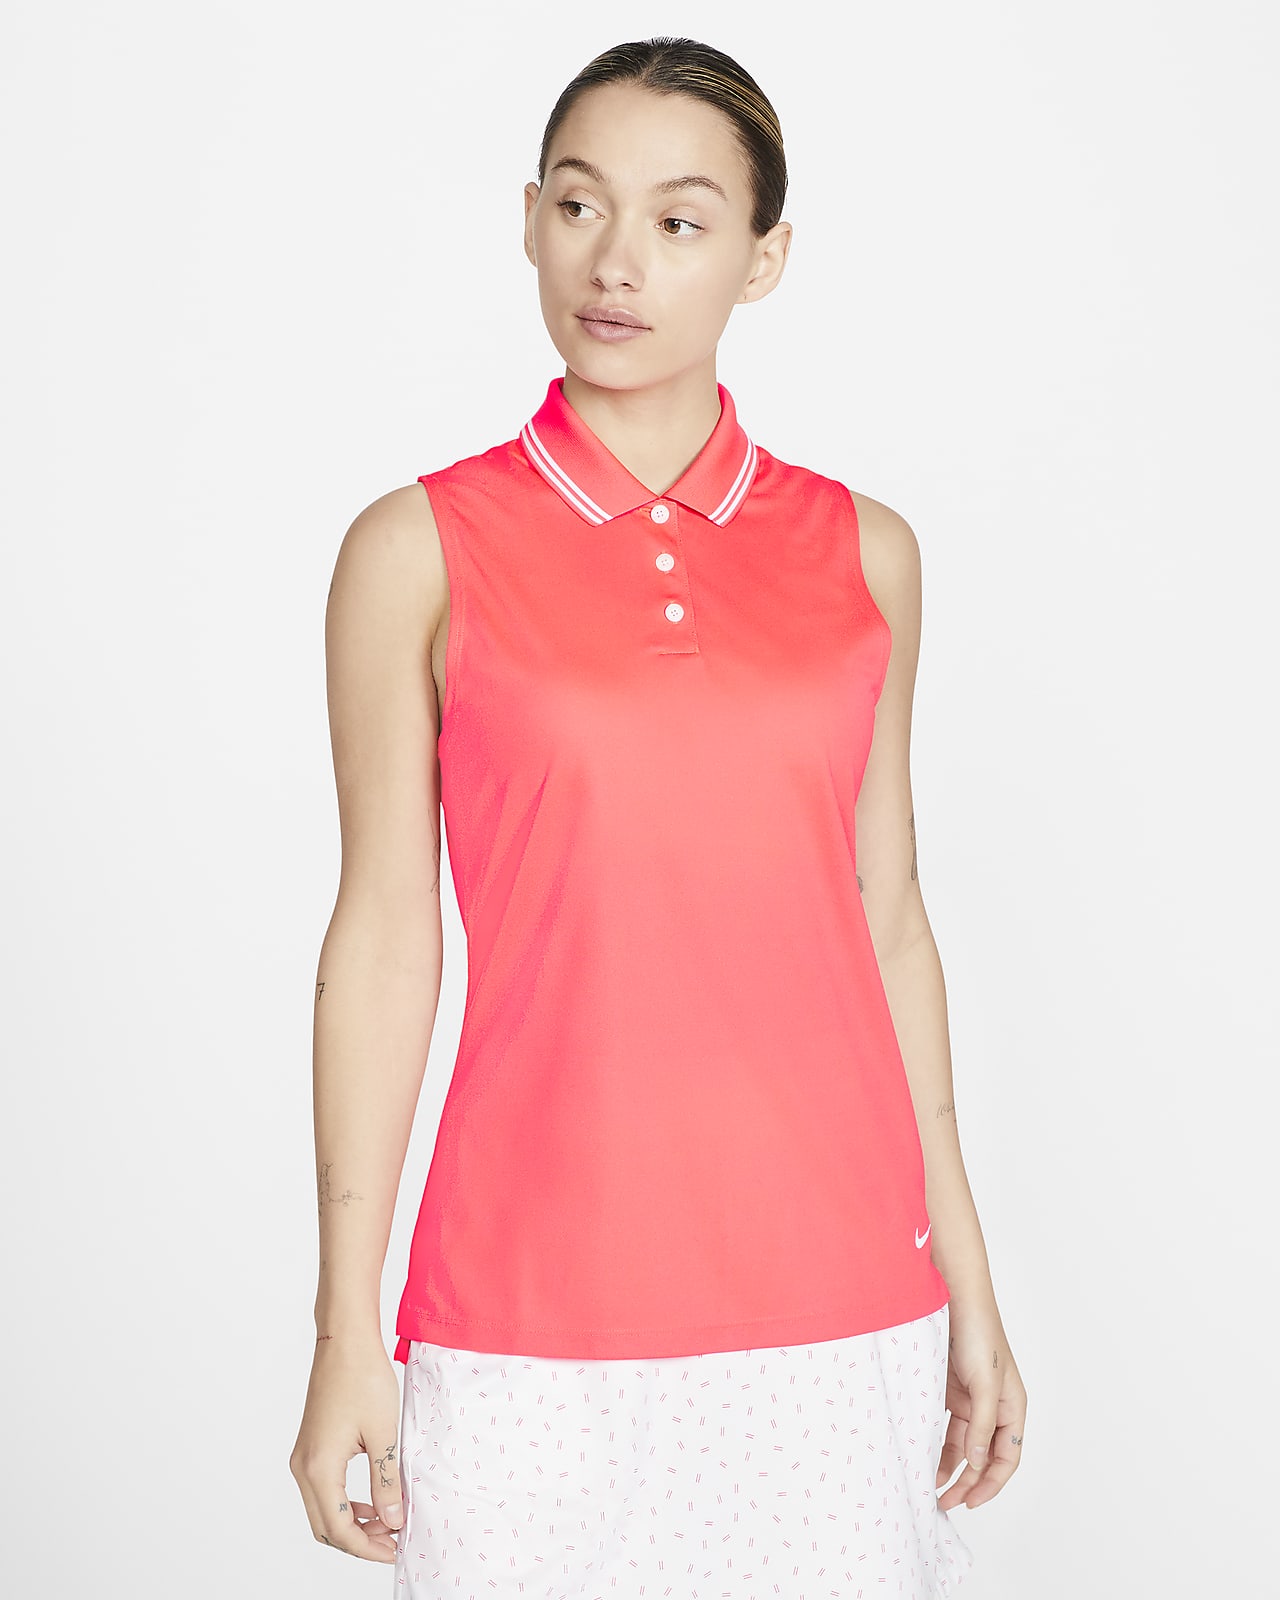 ladies red sleeveless golf shirt